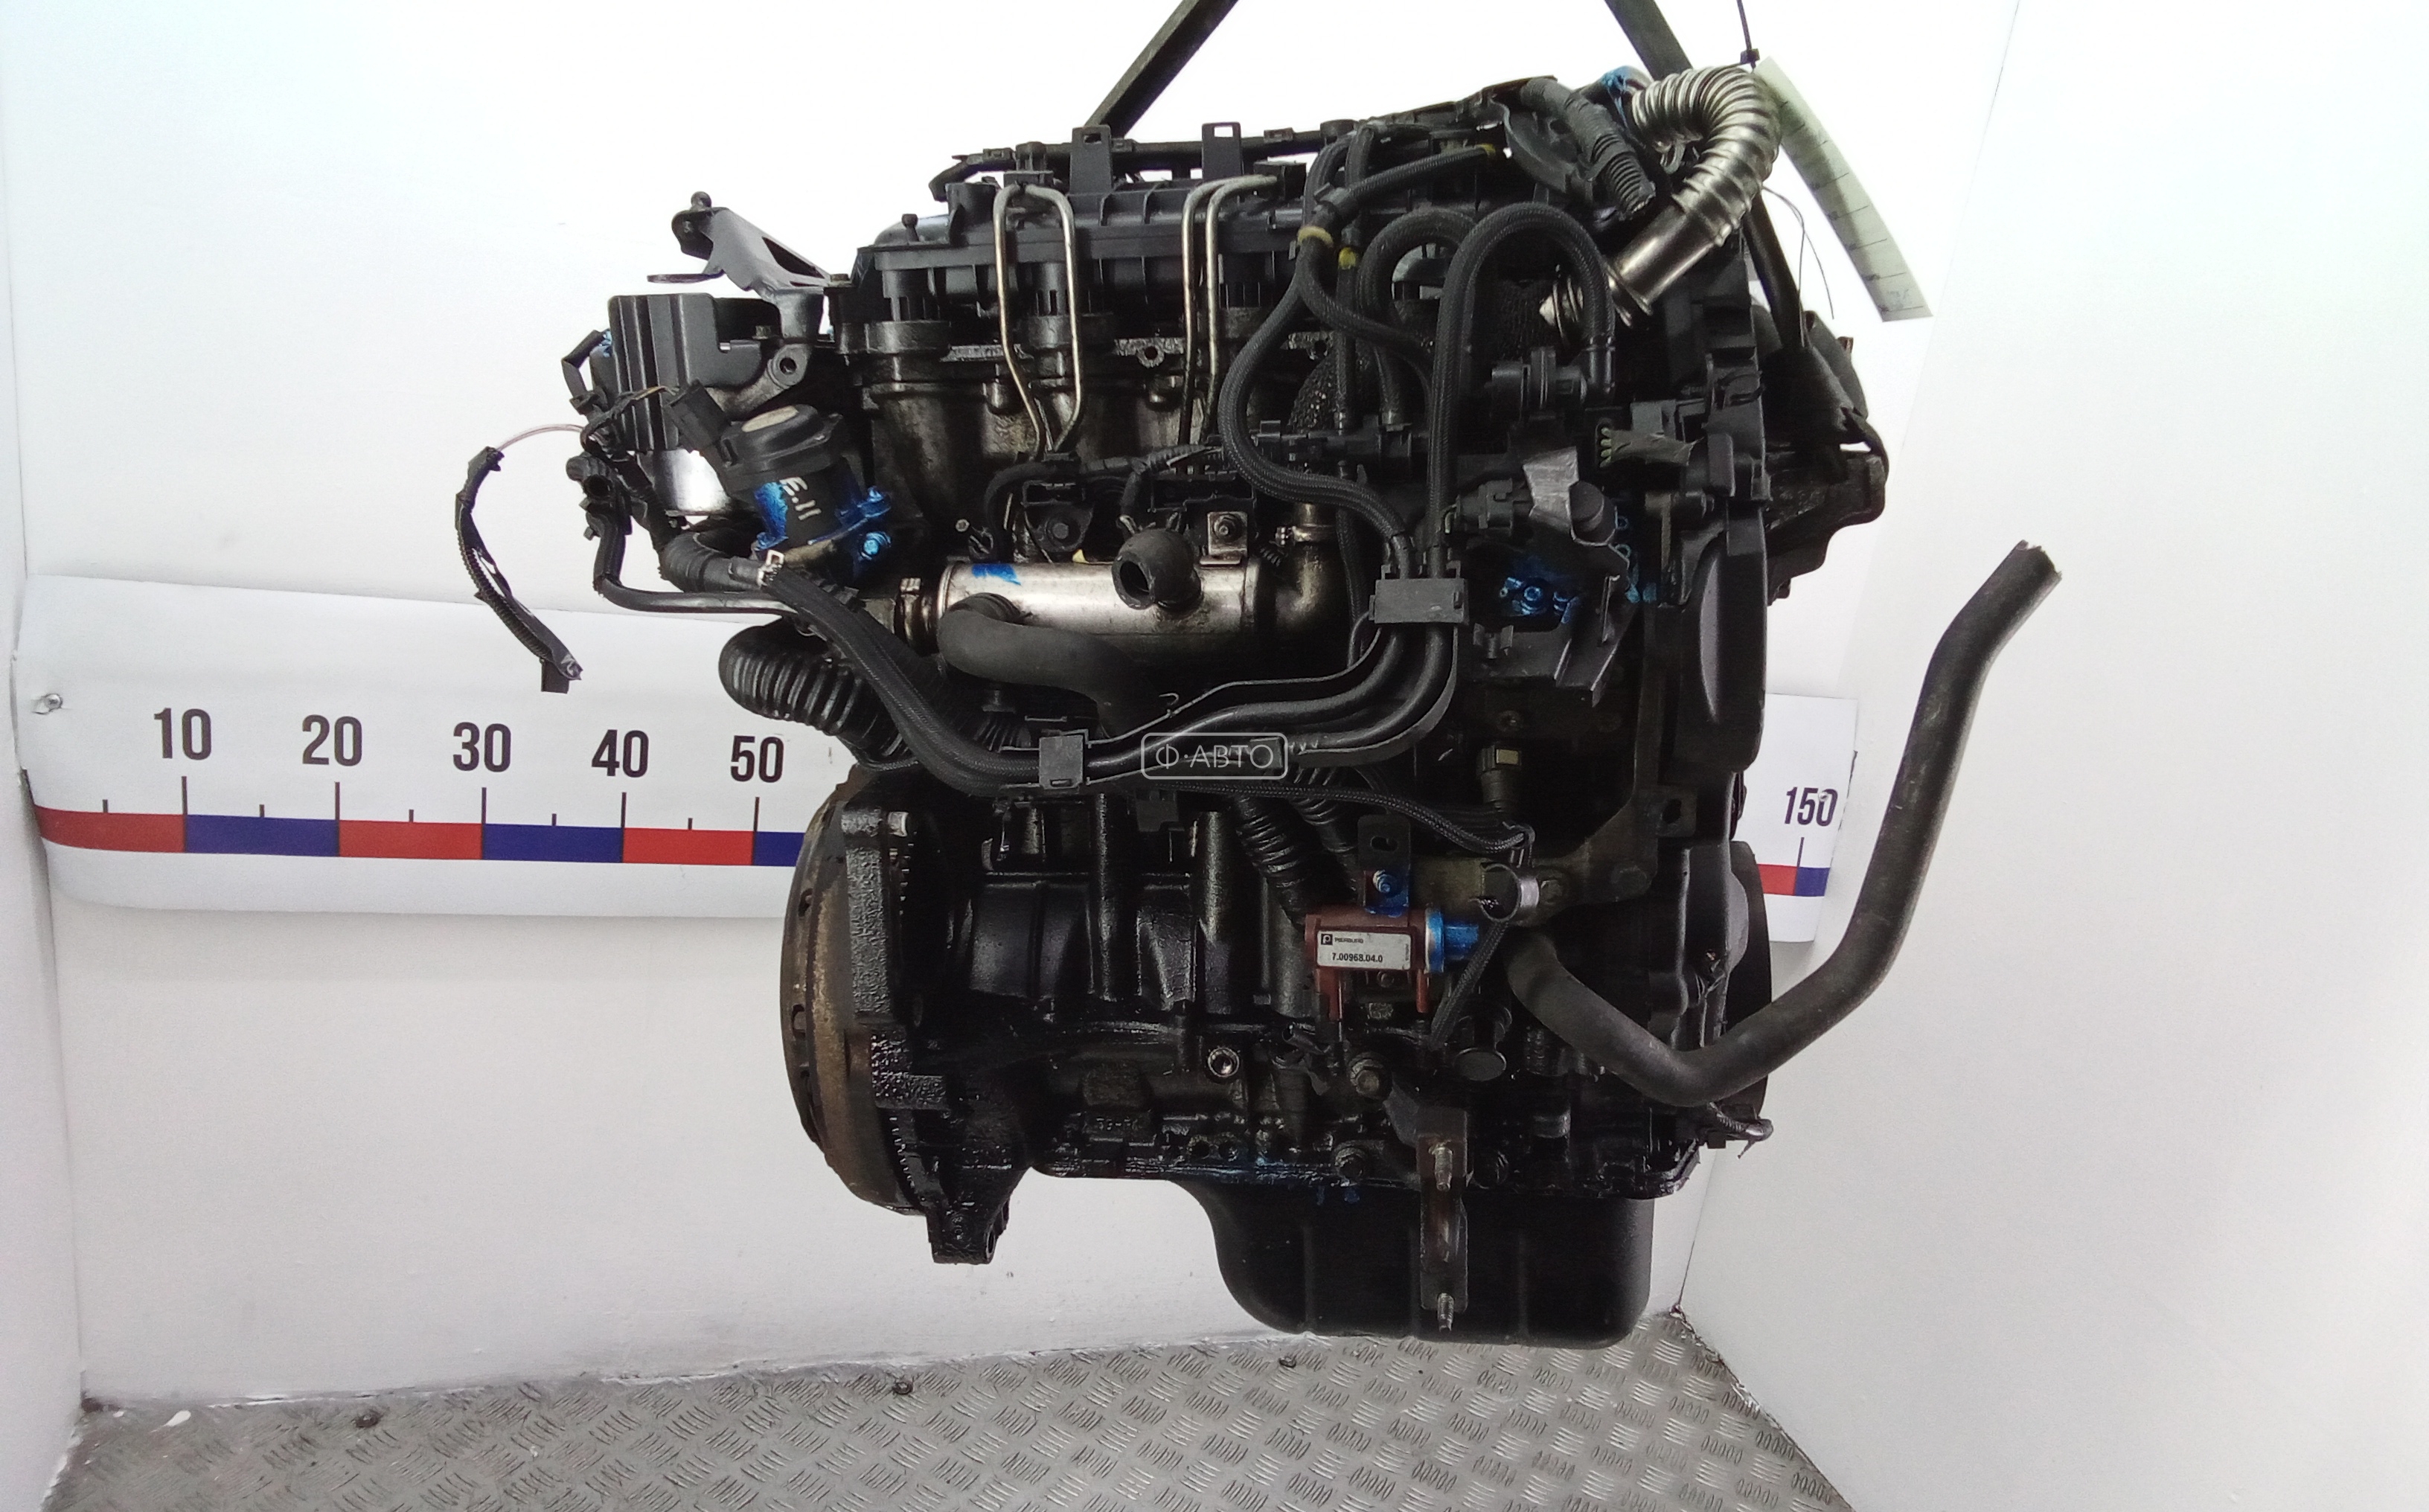 Двигатель для Ford Focus 2 (Форд Фокус 2) - купить б/у в Минске и Беларуси, цены авторазборок